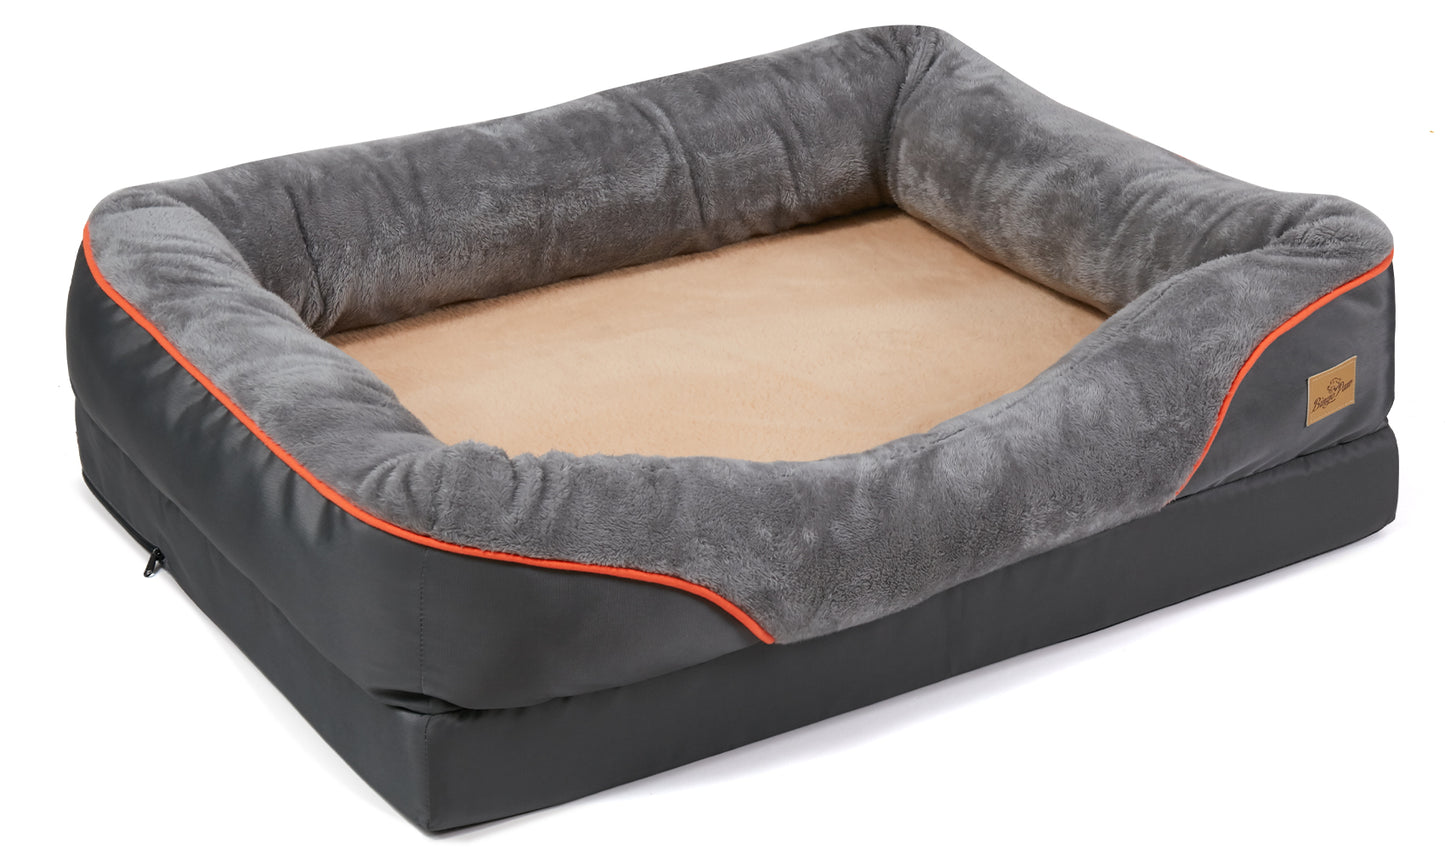 Orthopedic Dog Pet Bed Sleep Bedding Washable Cover Waterproof Lounge